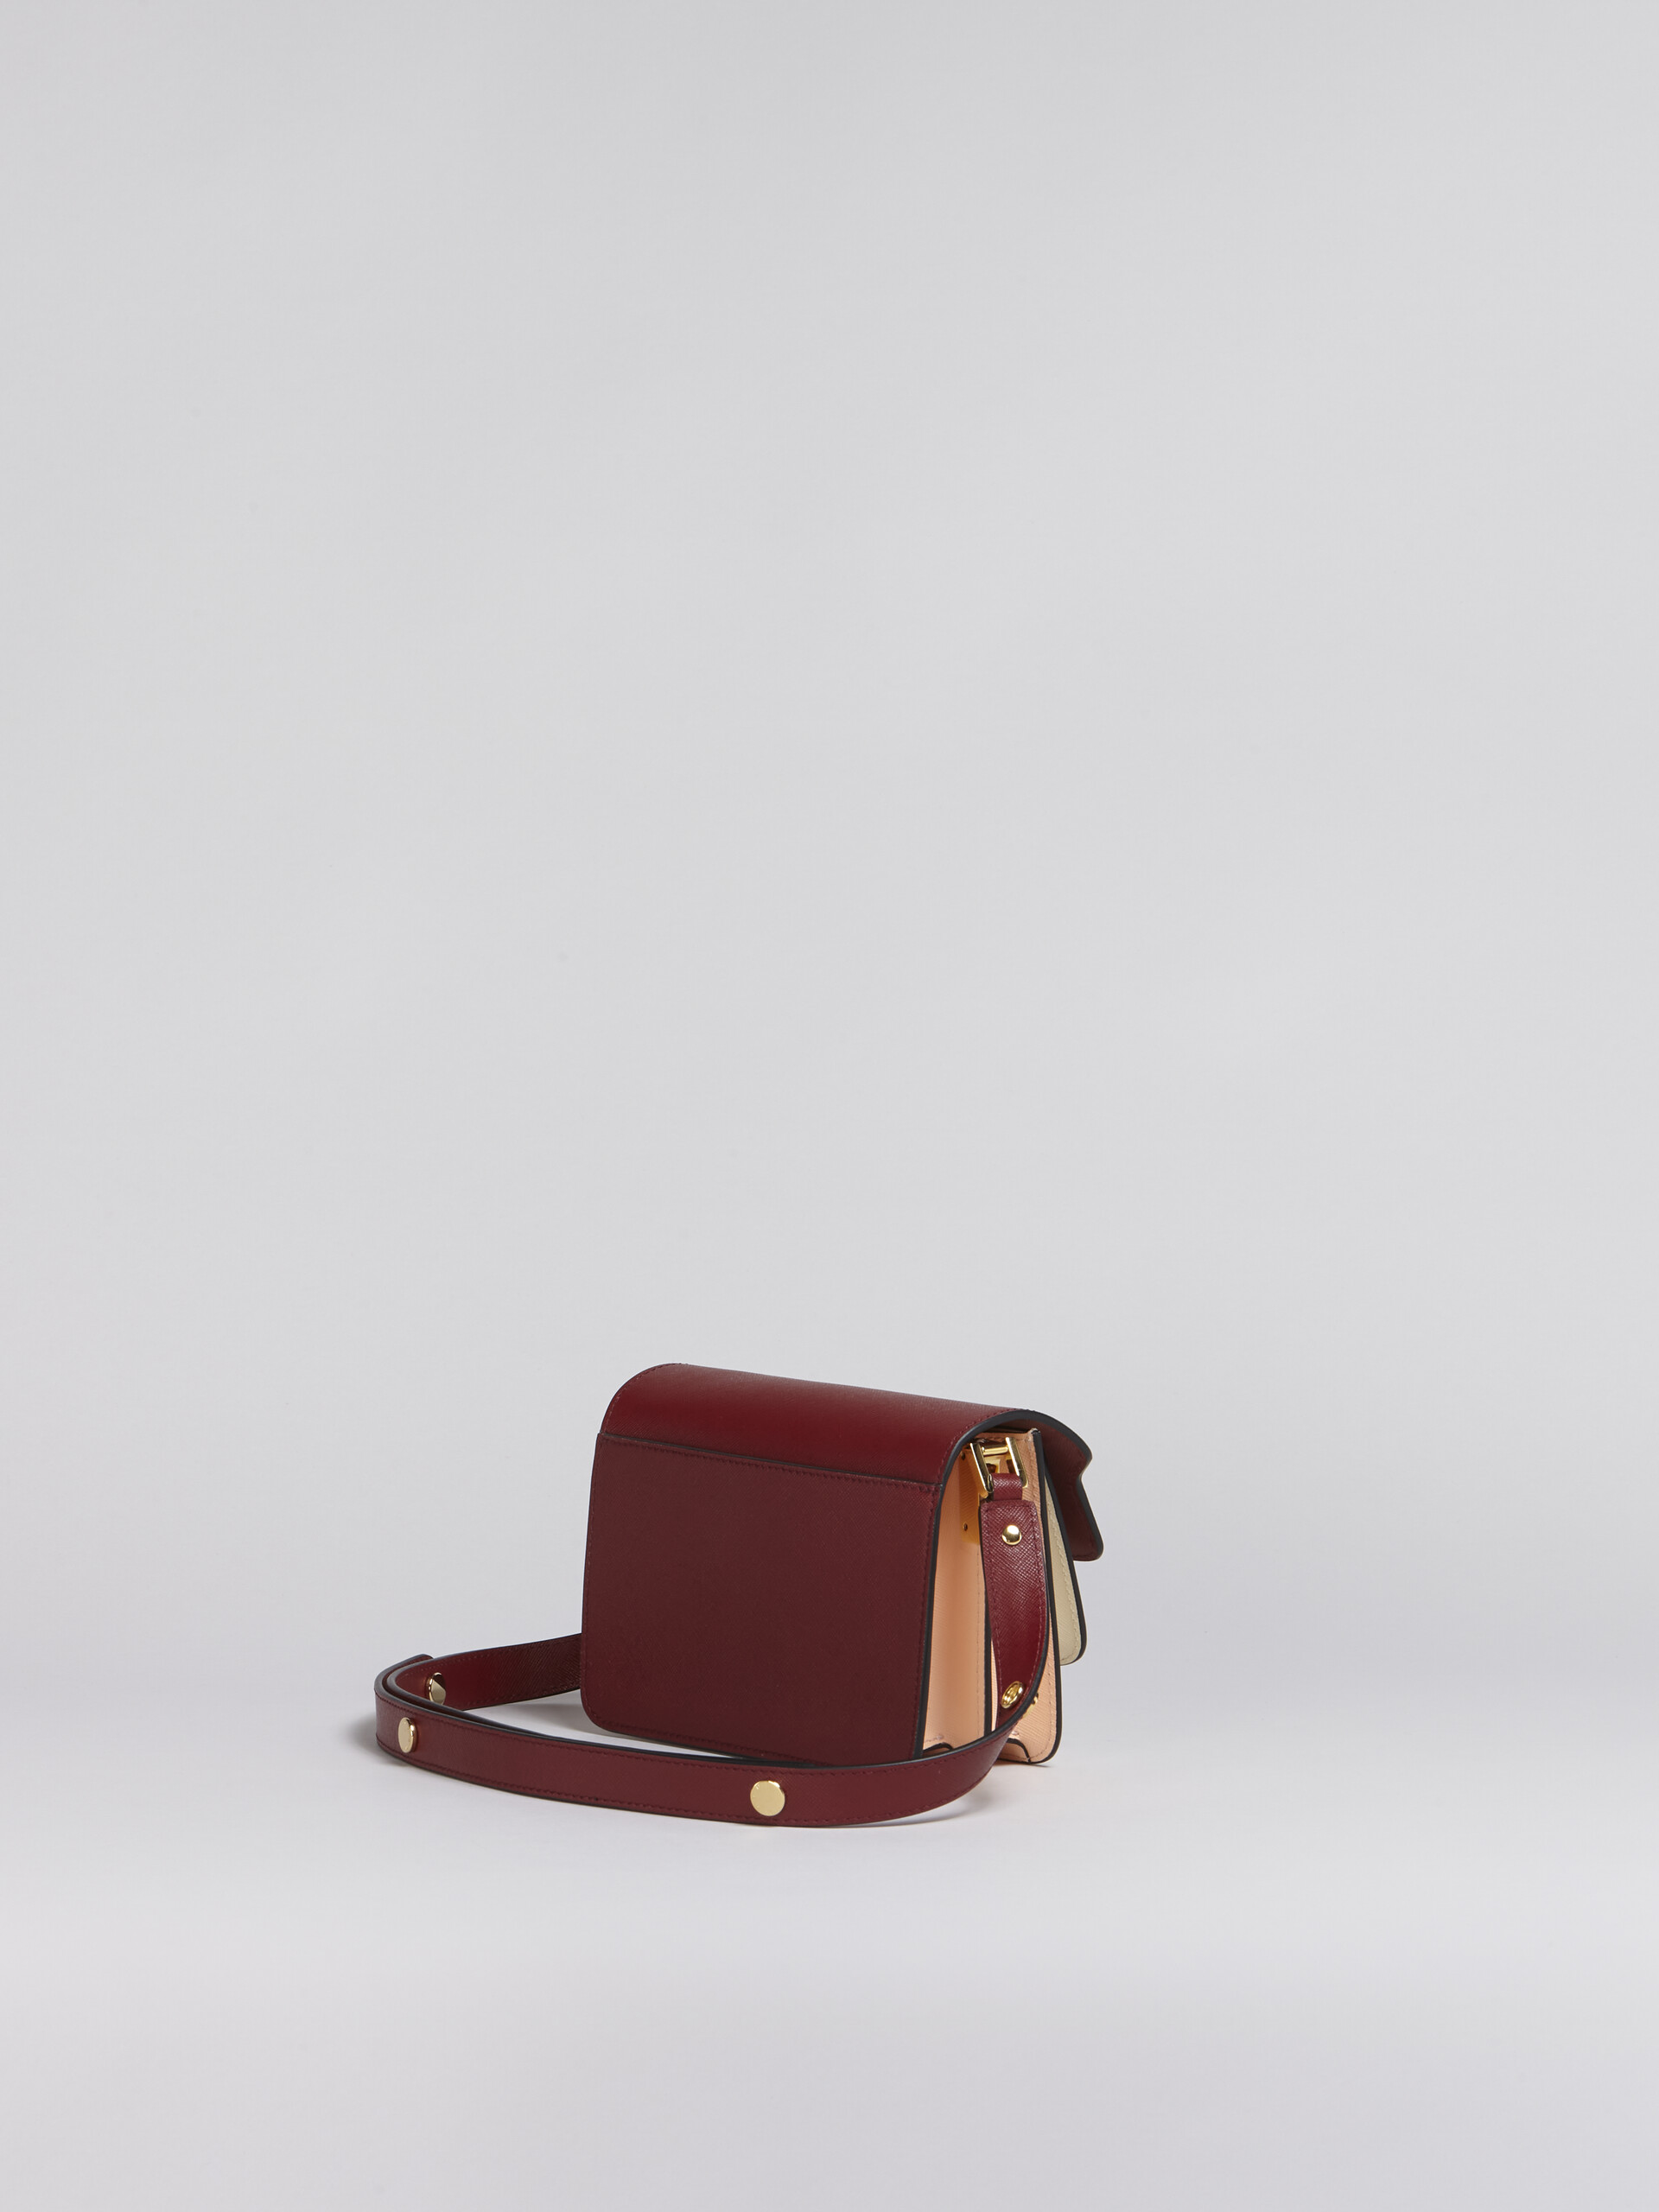 Mini-sac porté épaule TRUNK de taille moyenne en cuir saffiano rouge multicolore - Sacs portés épaule - Image 2